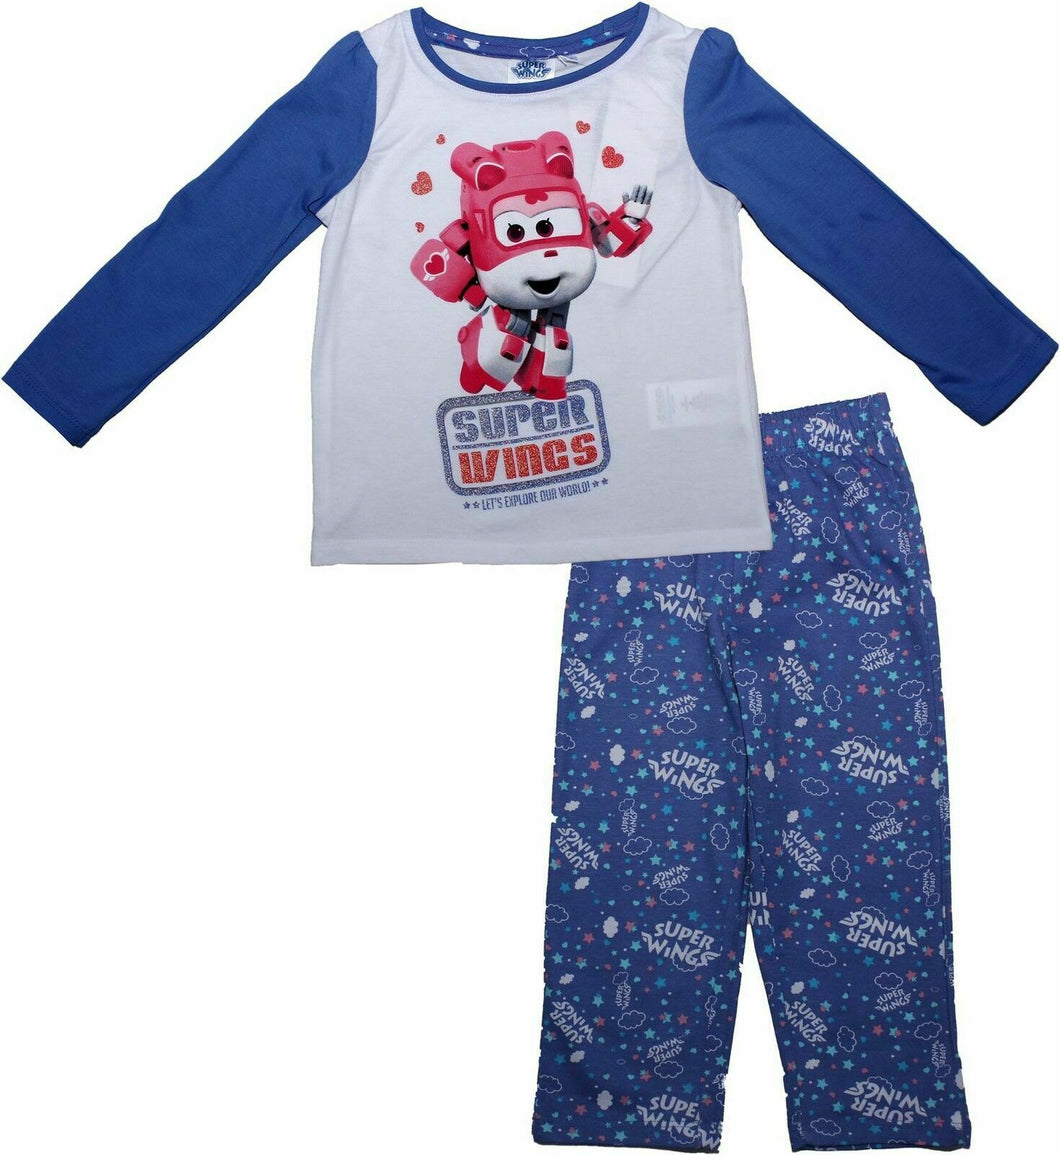 Girls Blue Superwings pyjamas